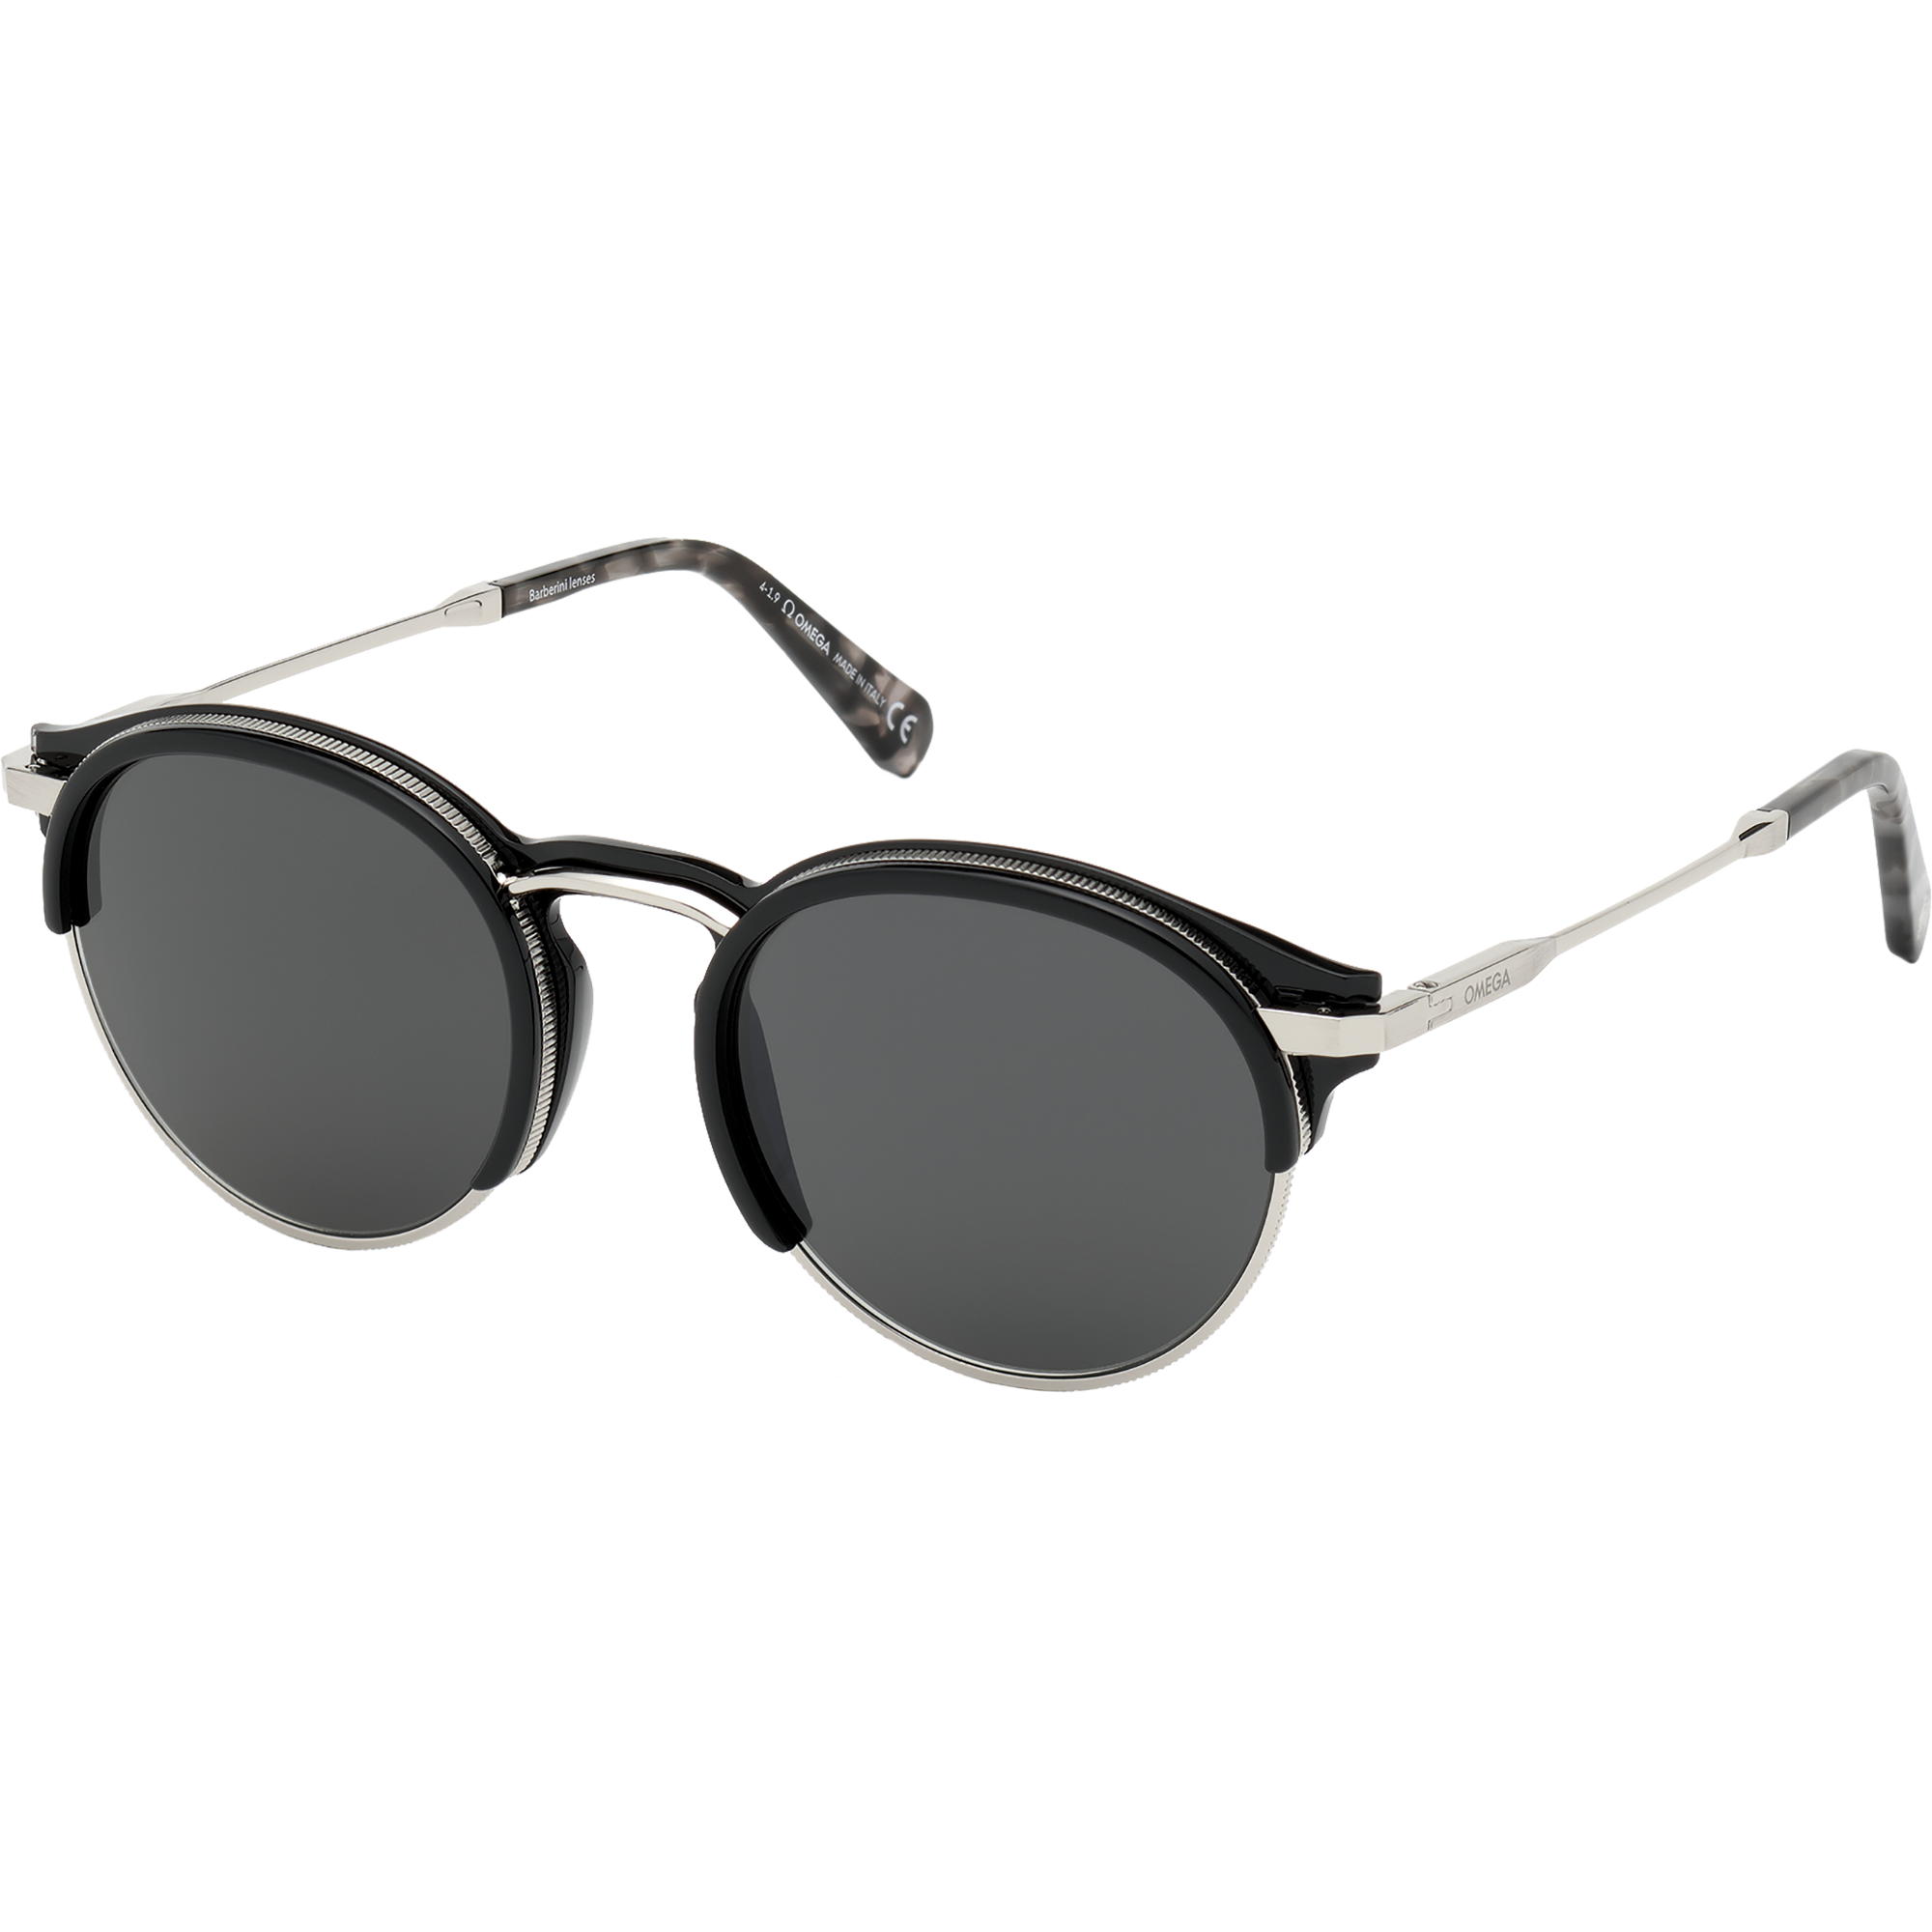 Солнцезащитные очки - Круглая форма, МУЖСКИЕ ОЧКИ - OM0014-H5305A